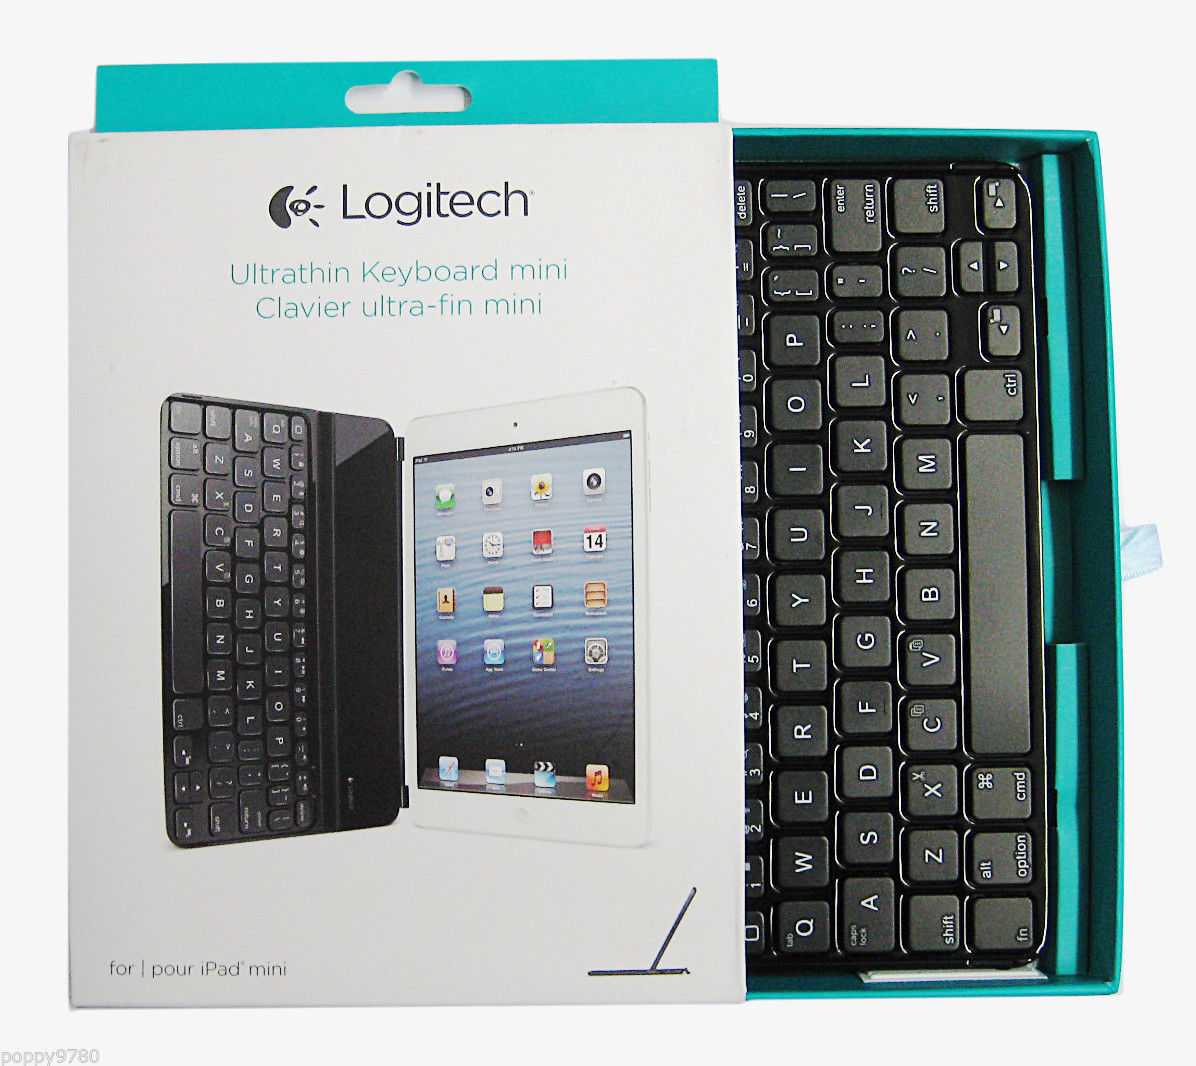 Logitech ultrathin keyboard cover 920-006782 silver bluetooth купить по акционной цене , отзывы и обзоры.